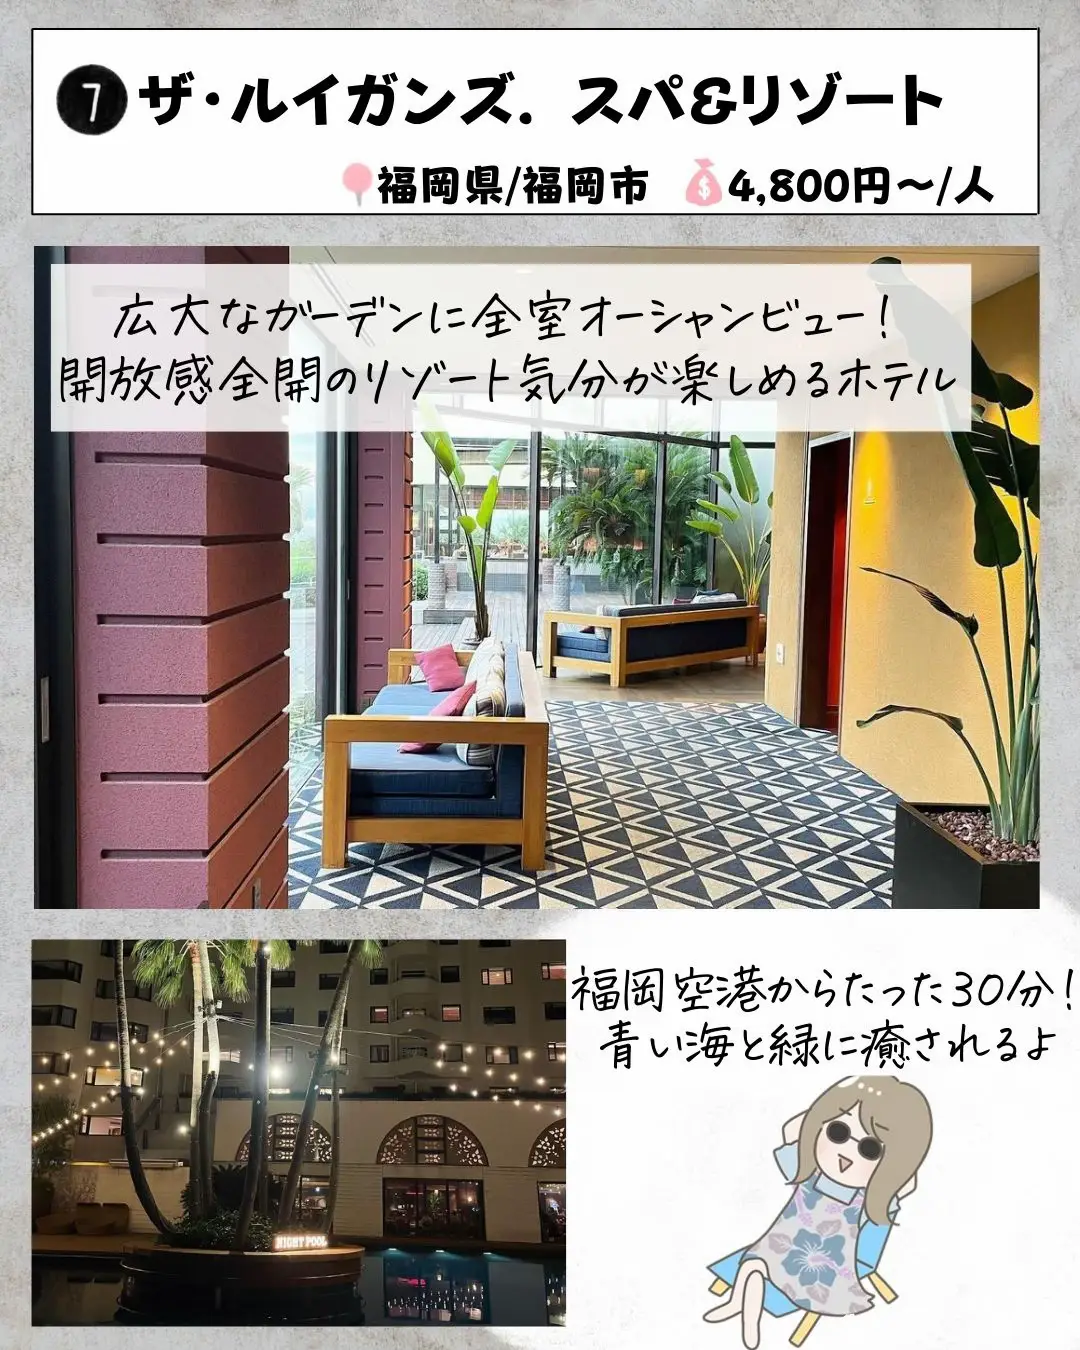 全国旅行支援で行きたい！1万円以下福岡ホテルの画像 (7枚目)